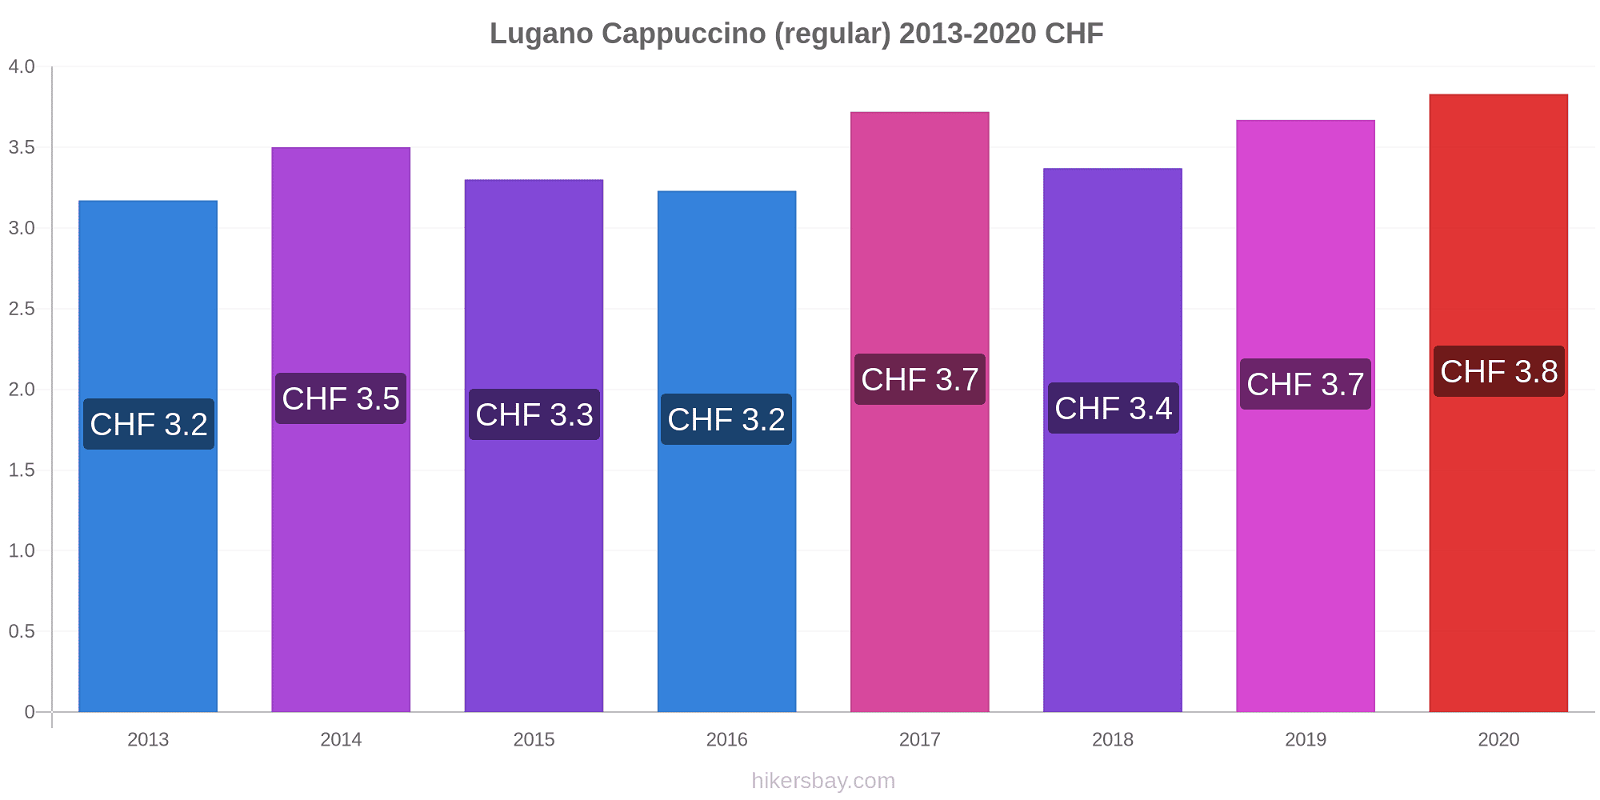 Lugano variação de preço Capuccino (regular) hikersbay.com